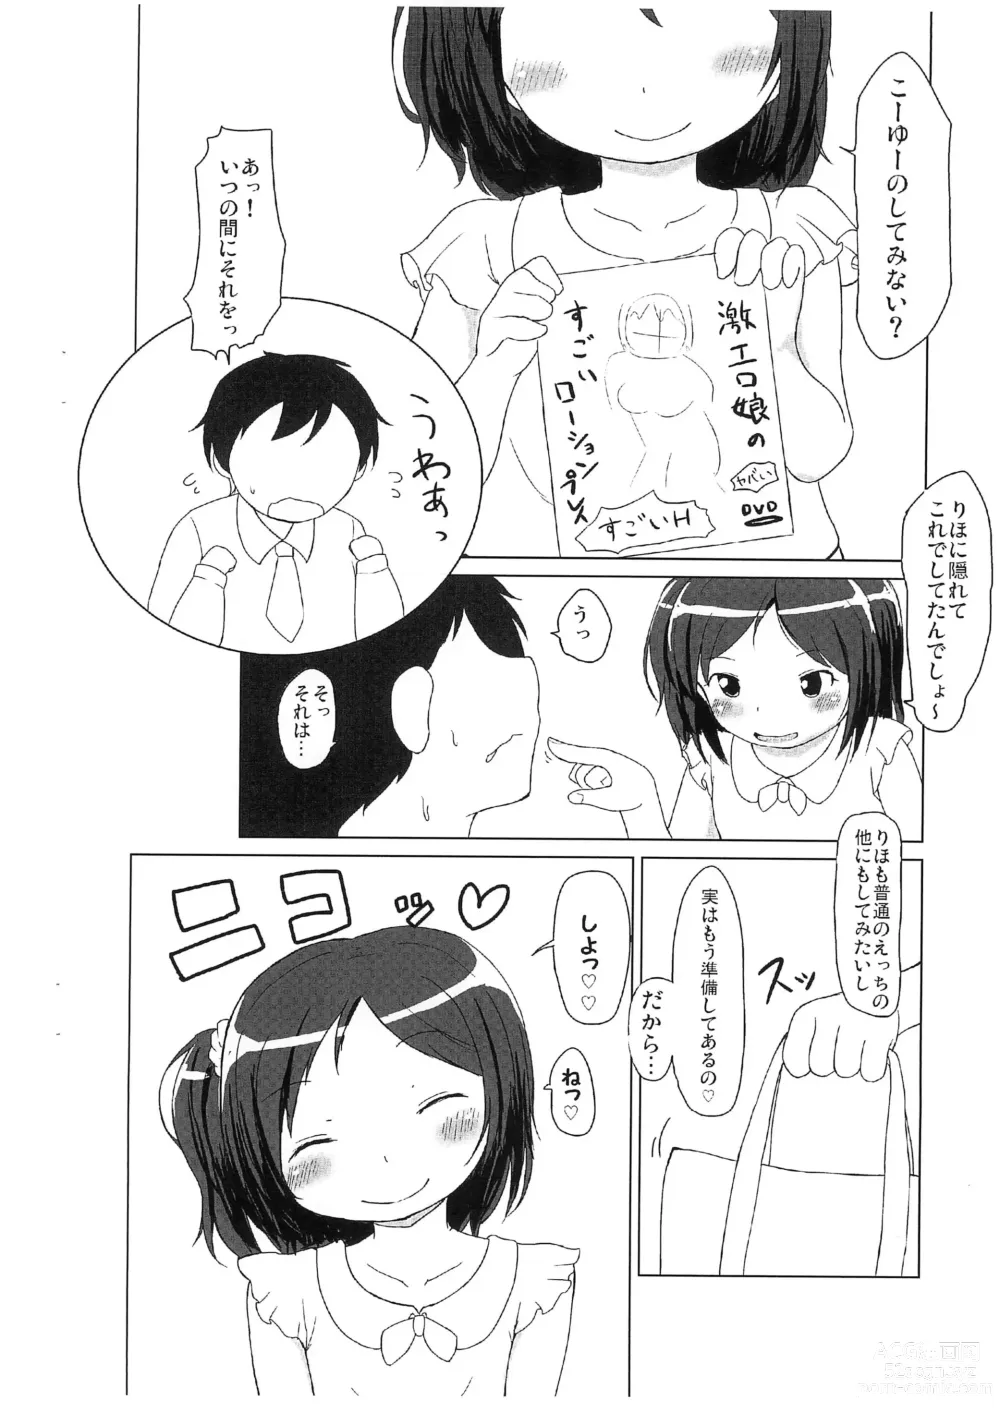 Page 4 of doujinshi Ofuro de Asobo